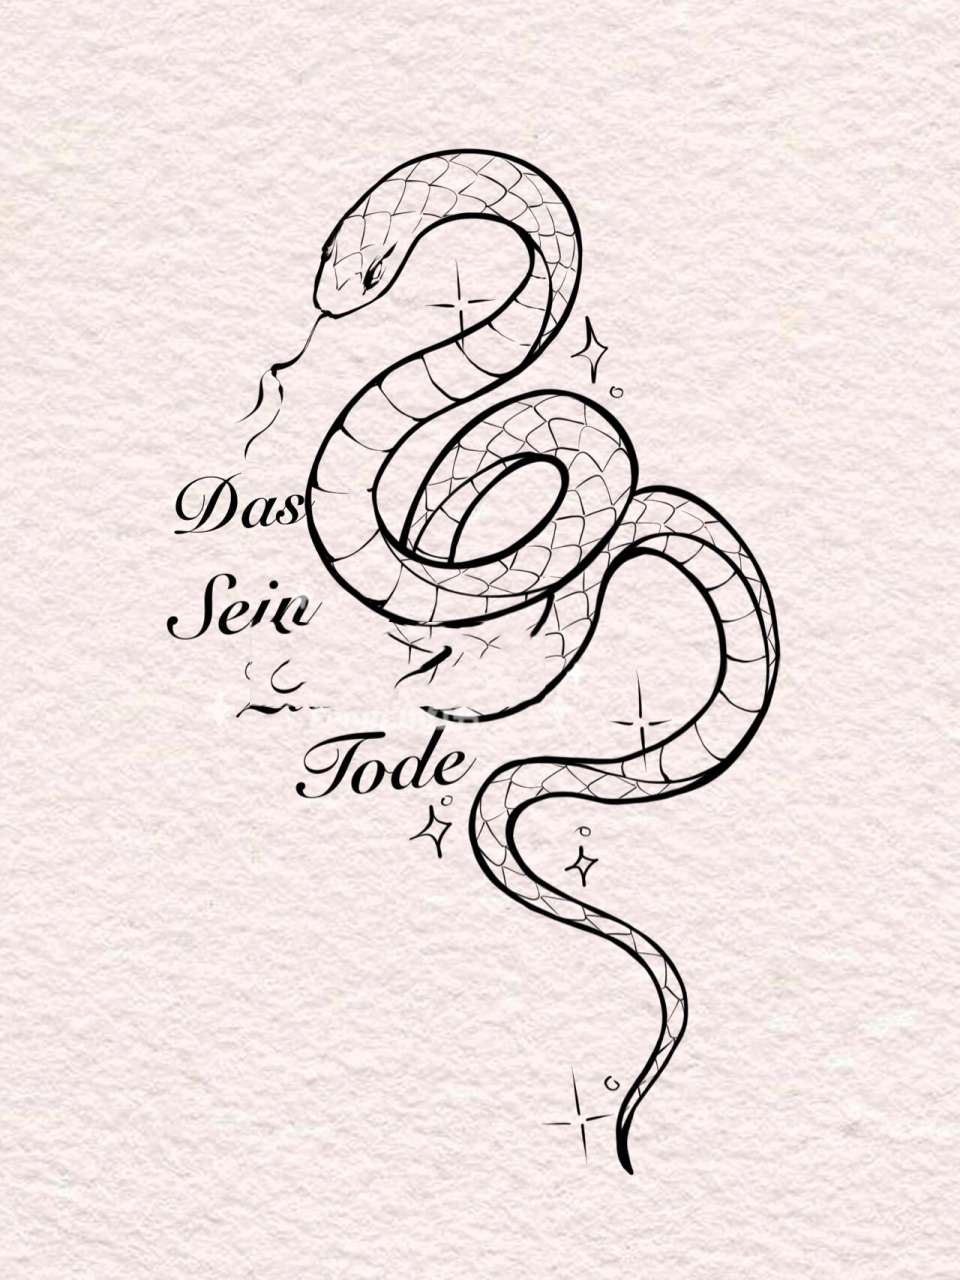 蛇纹身手稿 素材图片